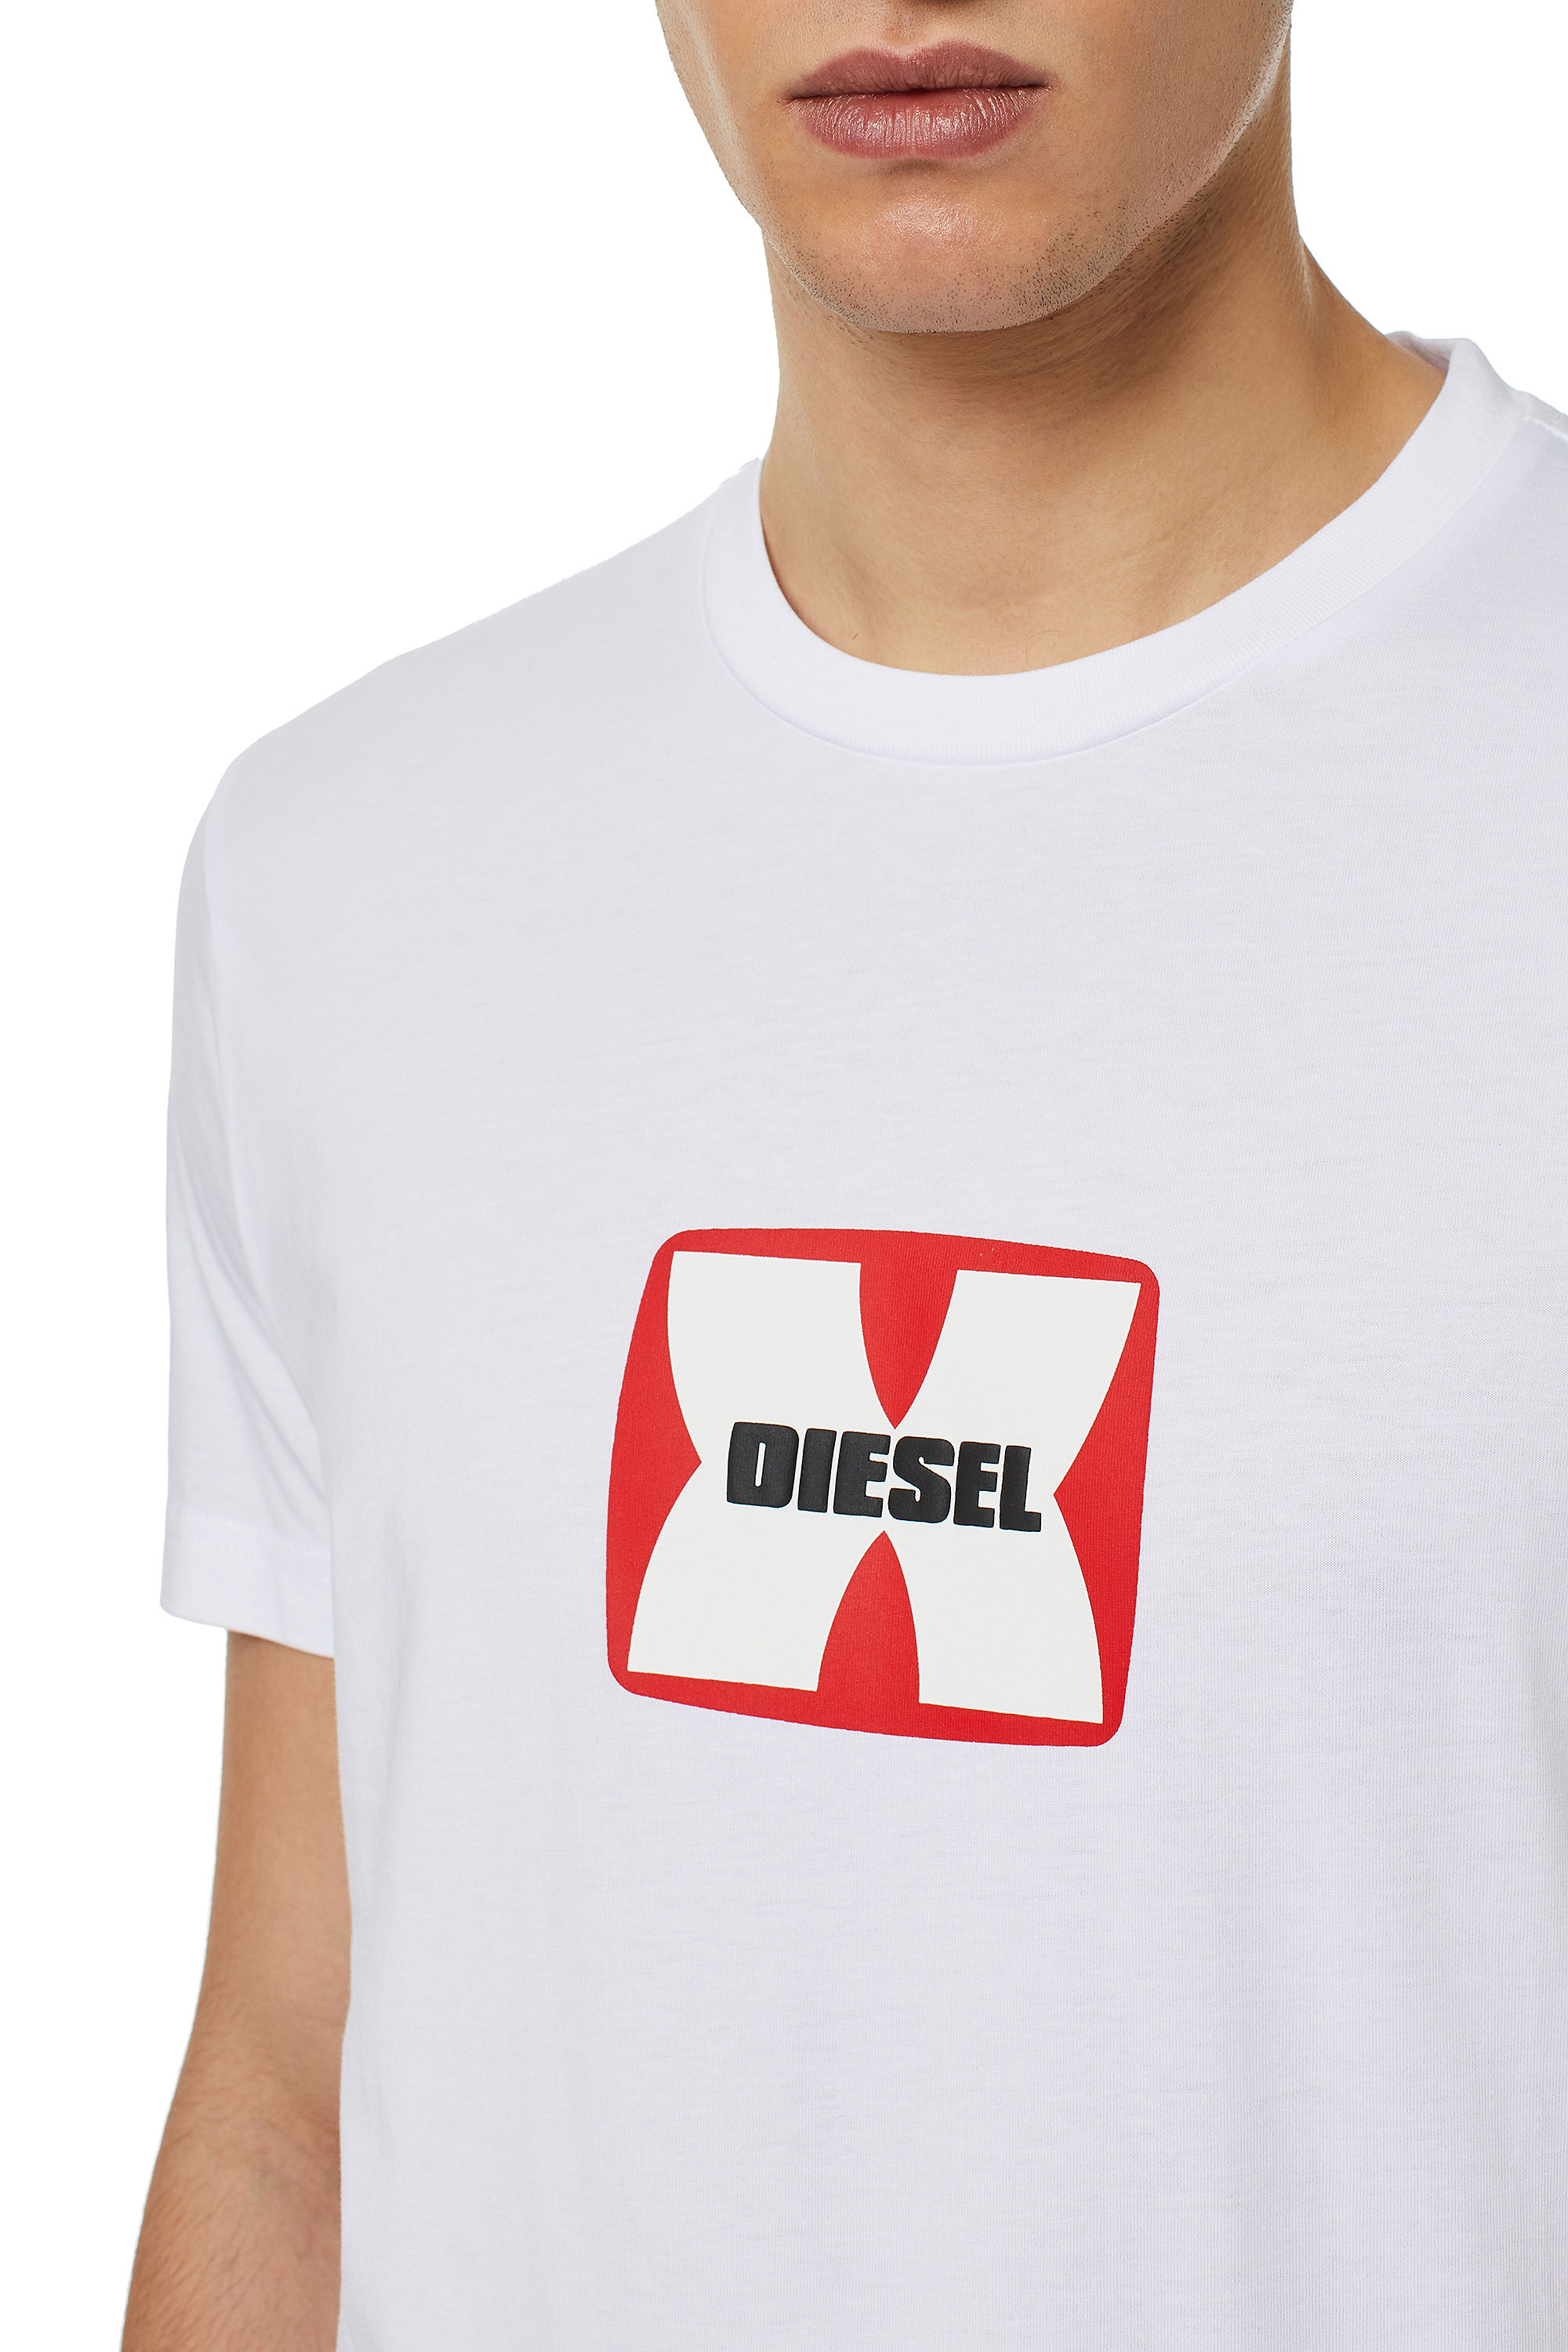 Diesel - T-DIEGOR-K47, White - Image 3